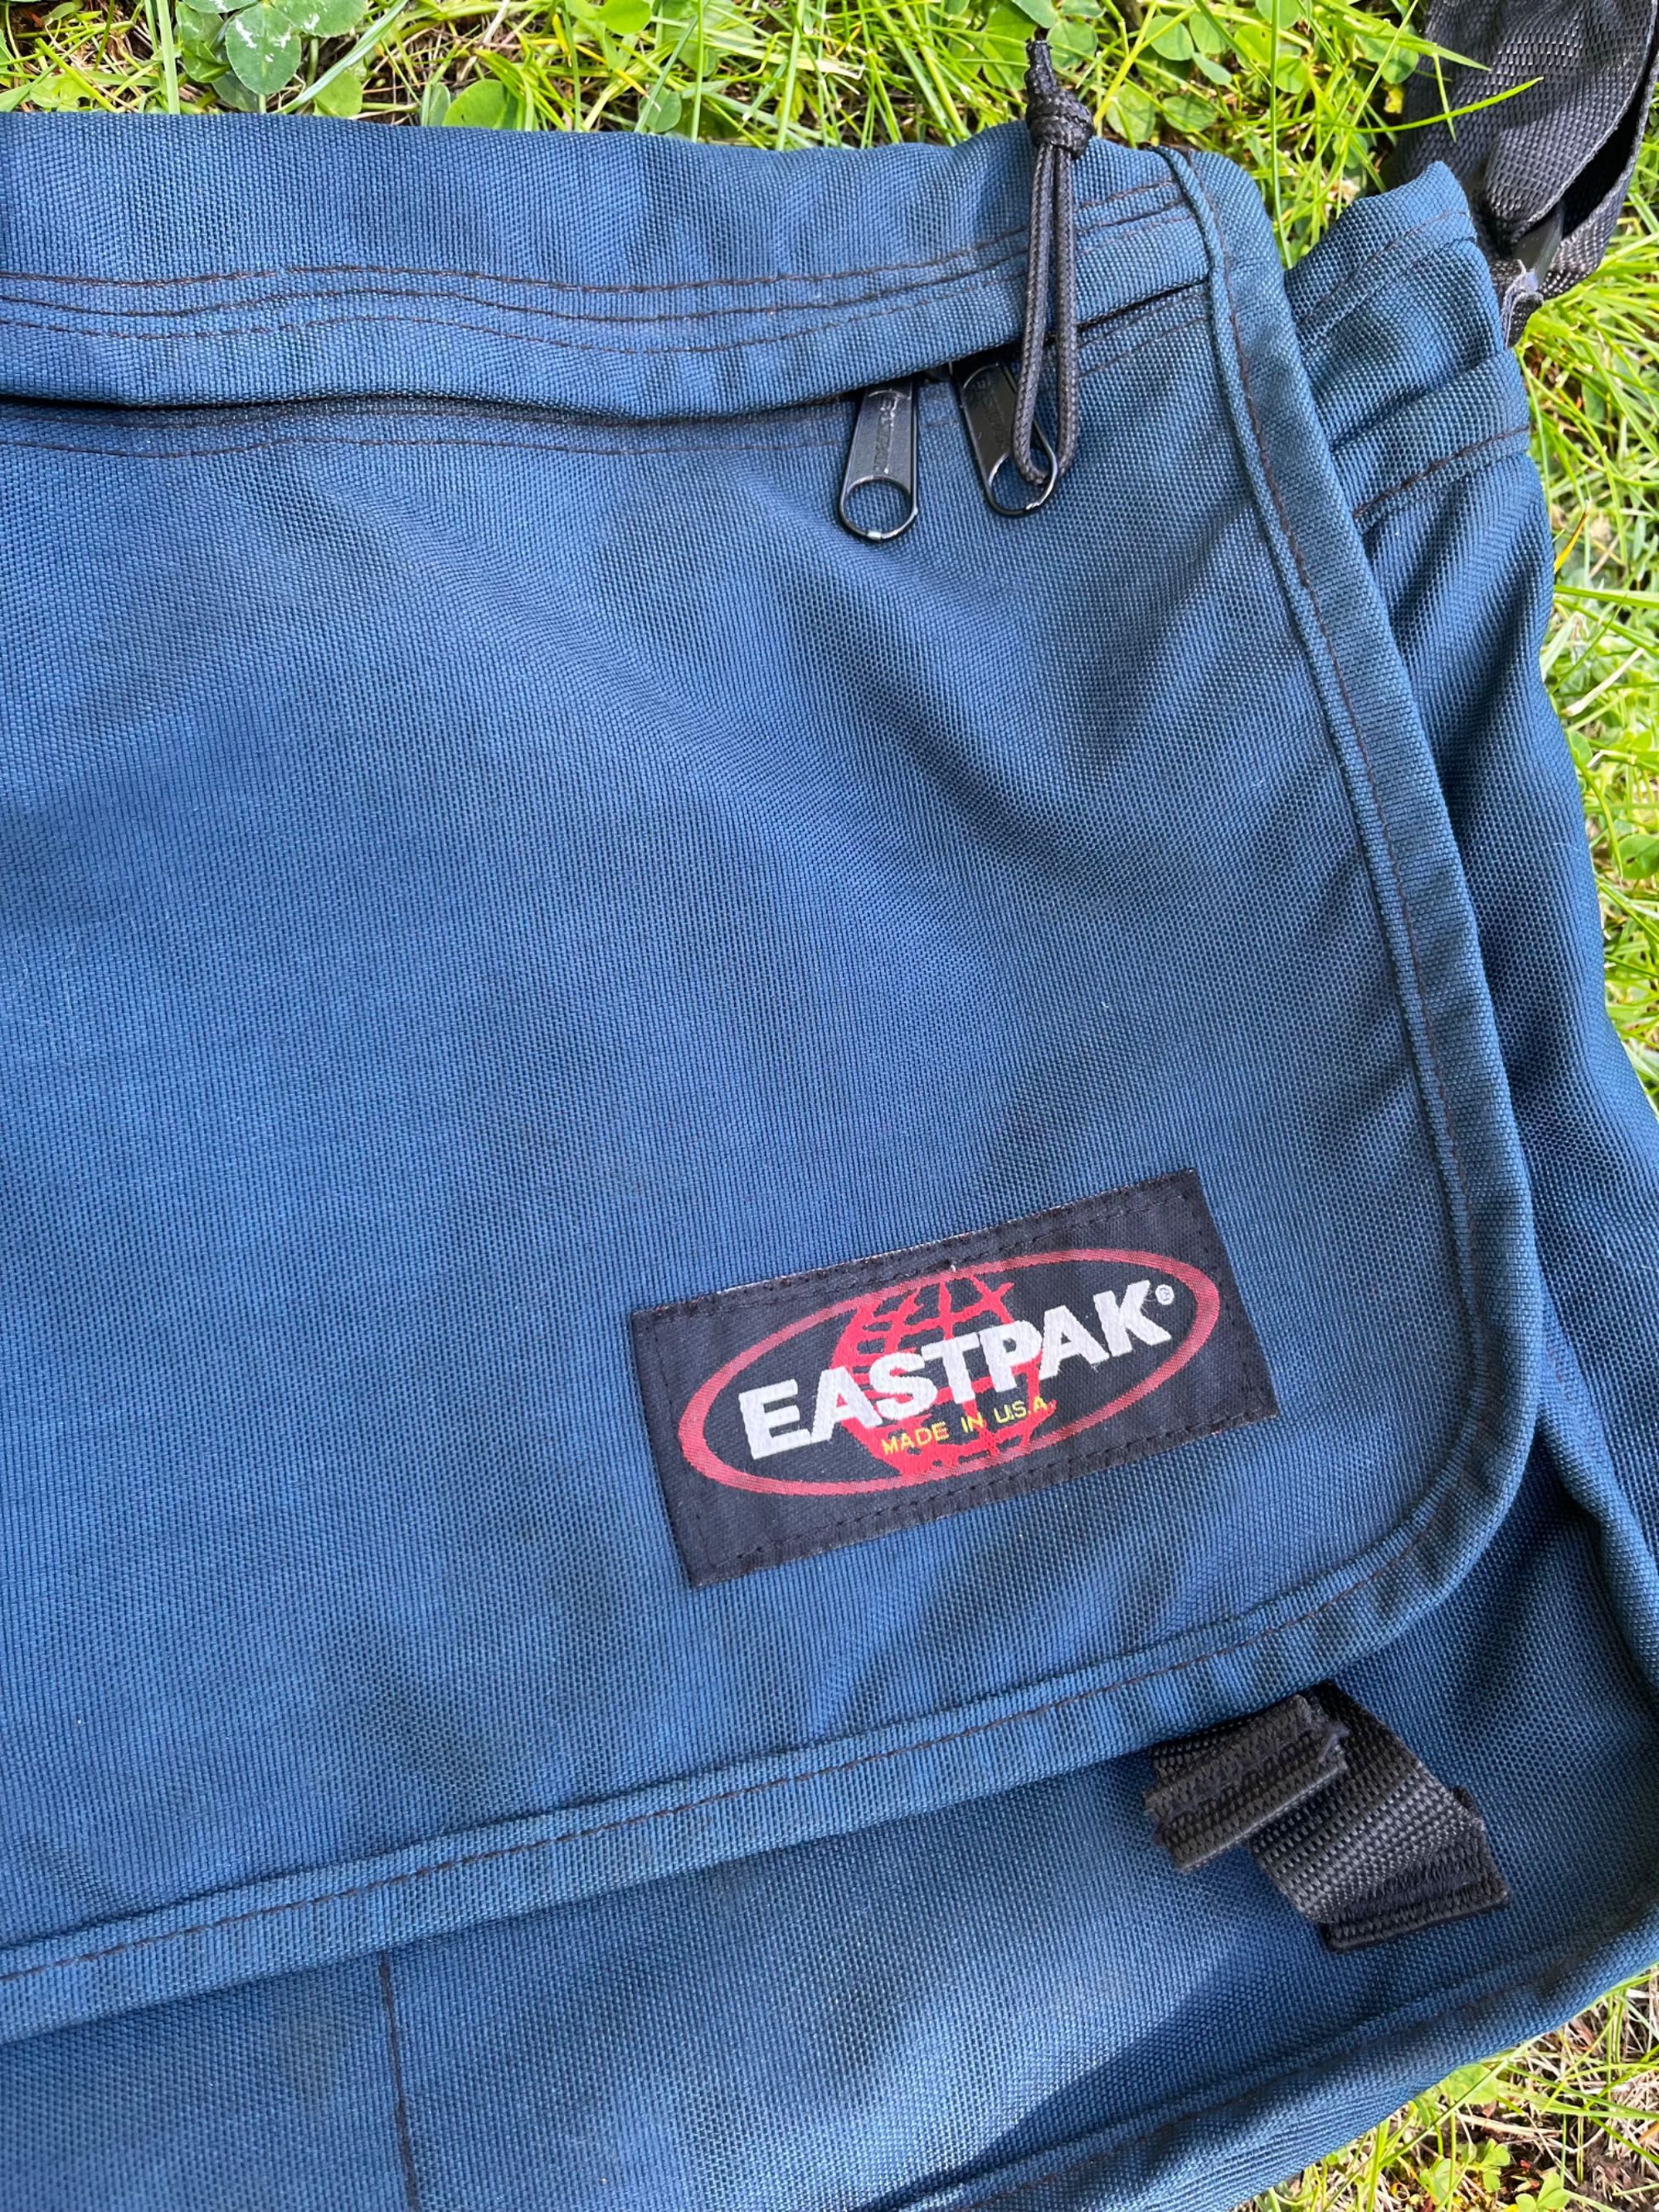 eastpack blue bag